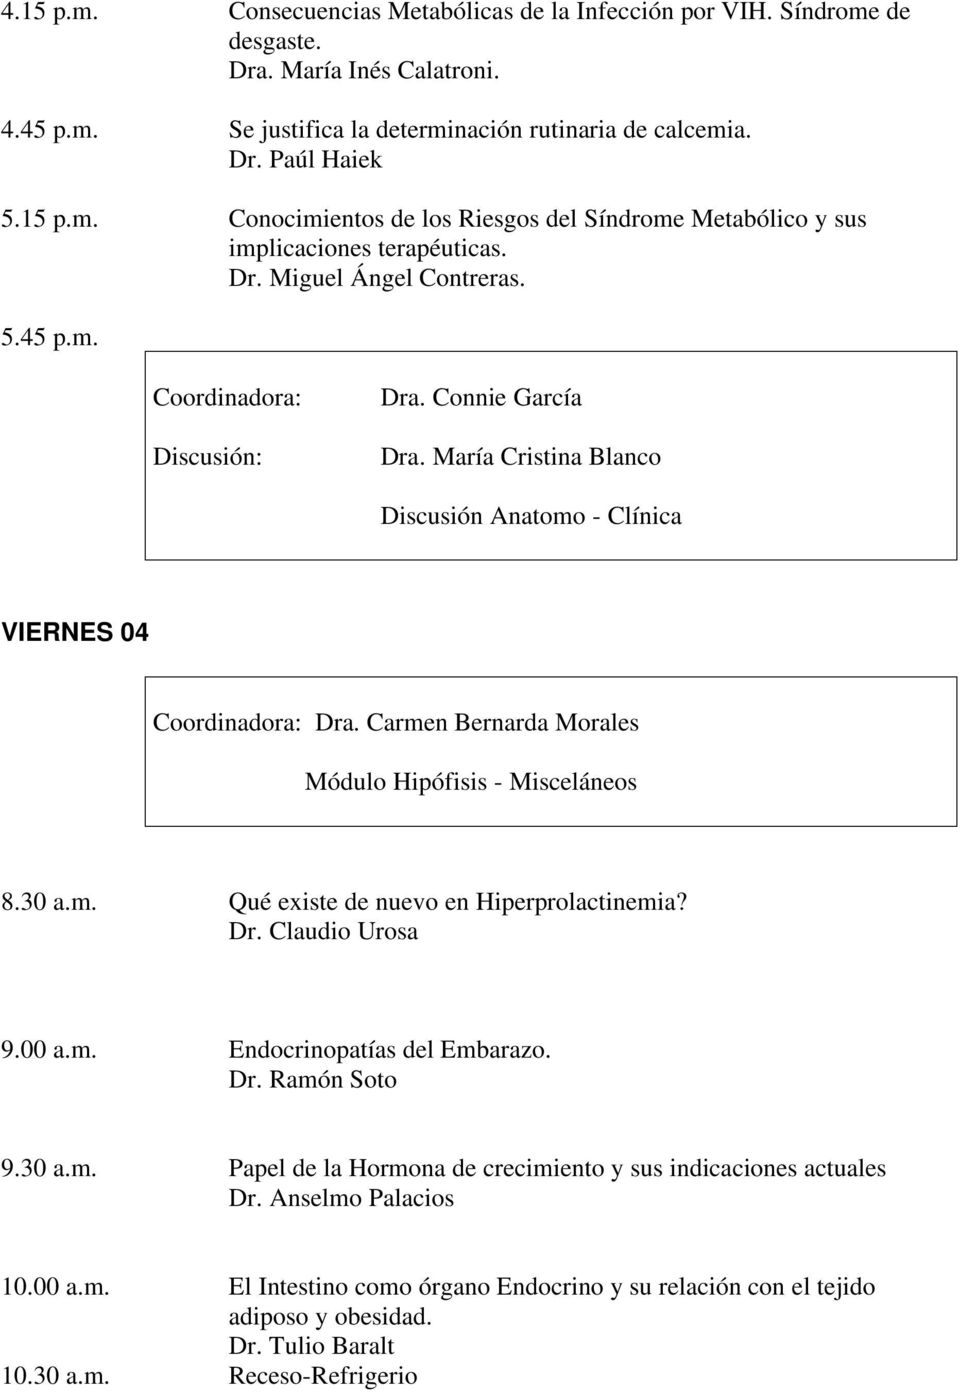 30 a.m. Qué existe de nuevo en Hiperprolactinemia? Dr. Claudio Urosa 9.00 a.m. Endocrinopatías del Embarazo. Dr. Ramón Soto 9.30 a.m. Papel de la Hormona de crecimiento y sus indicaciones actuales Dr.